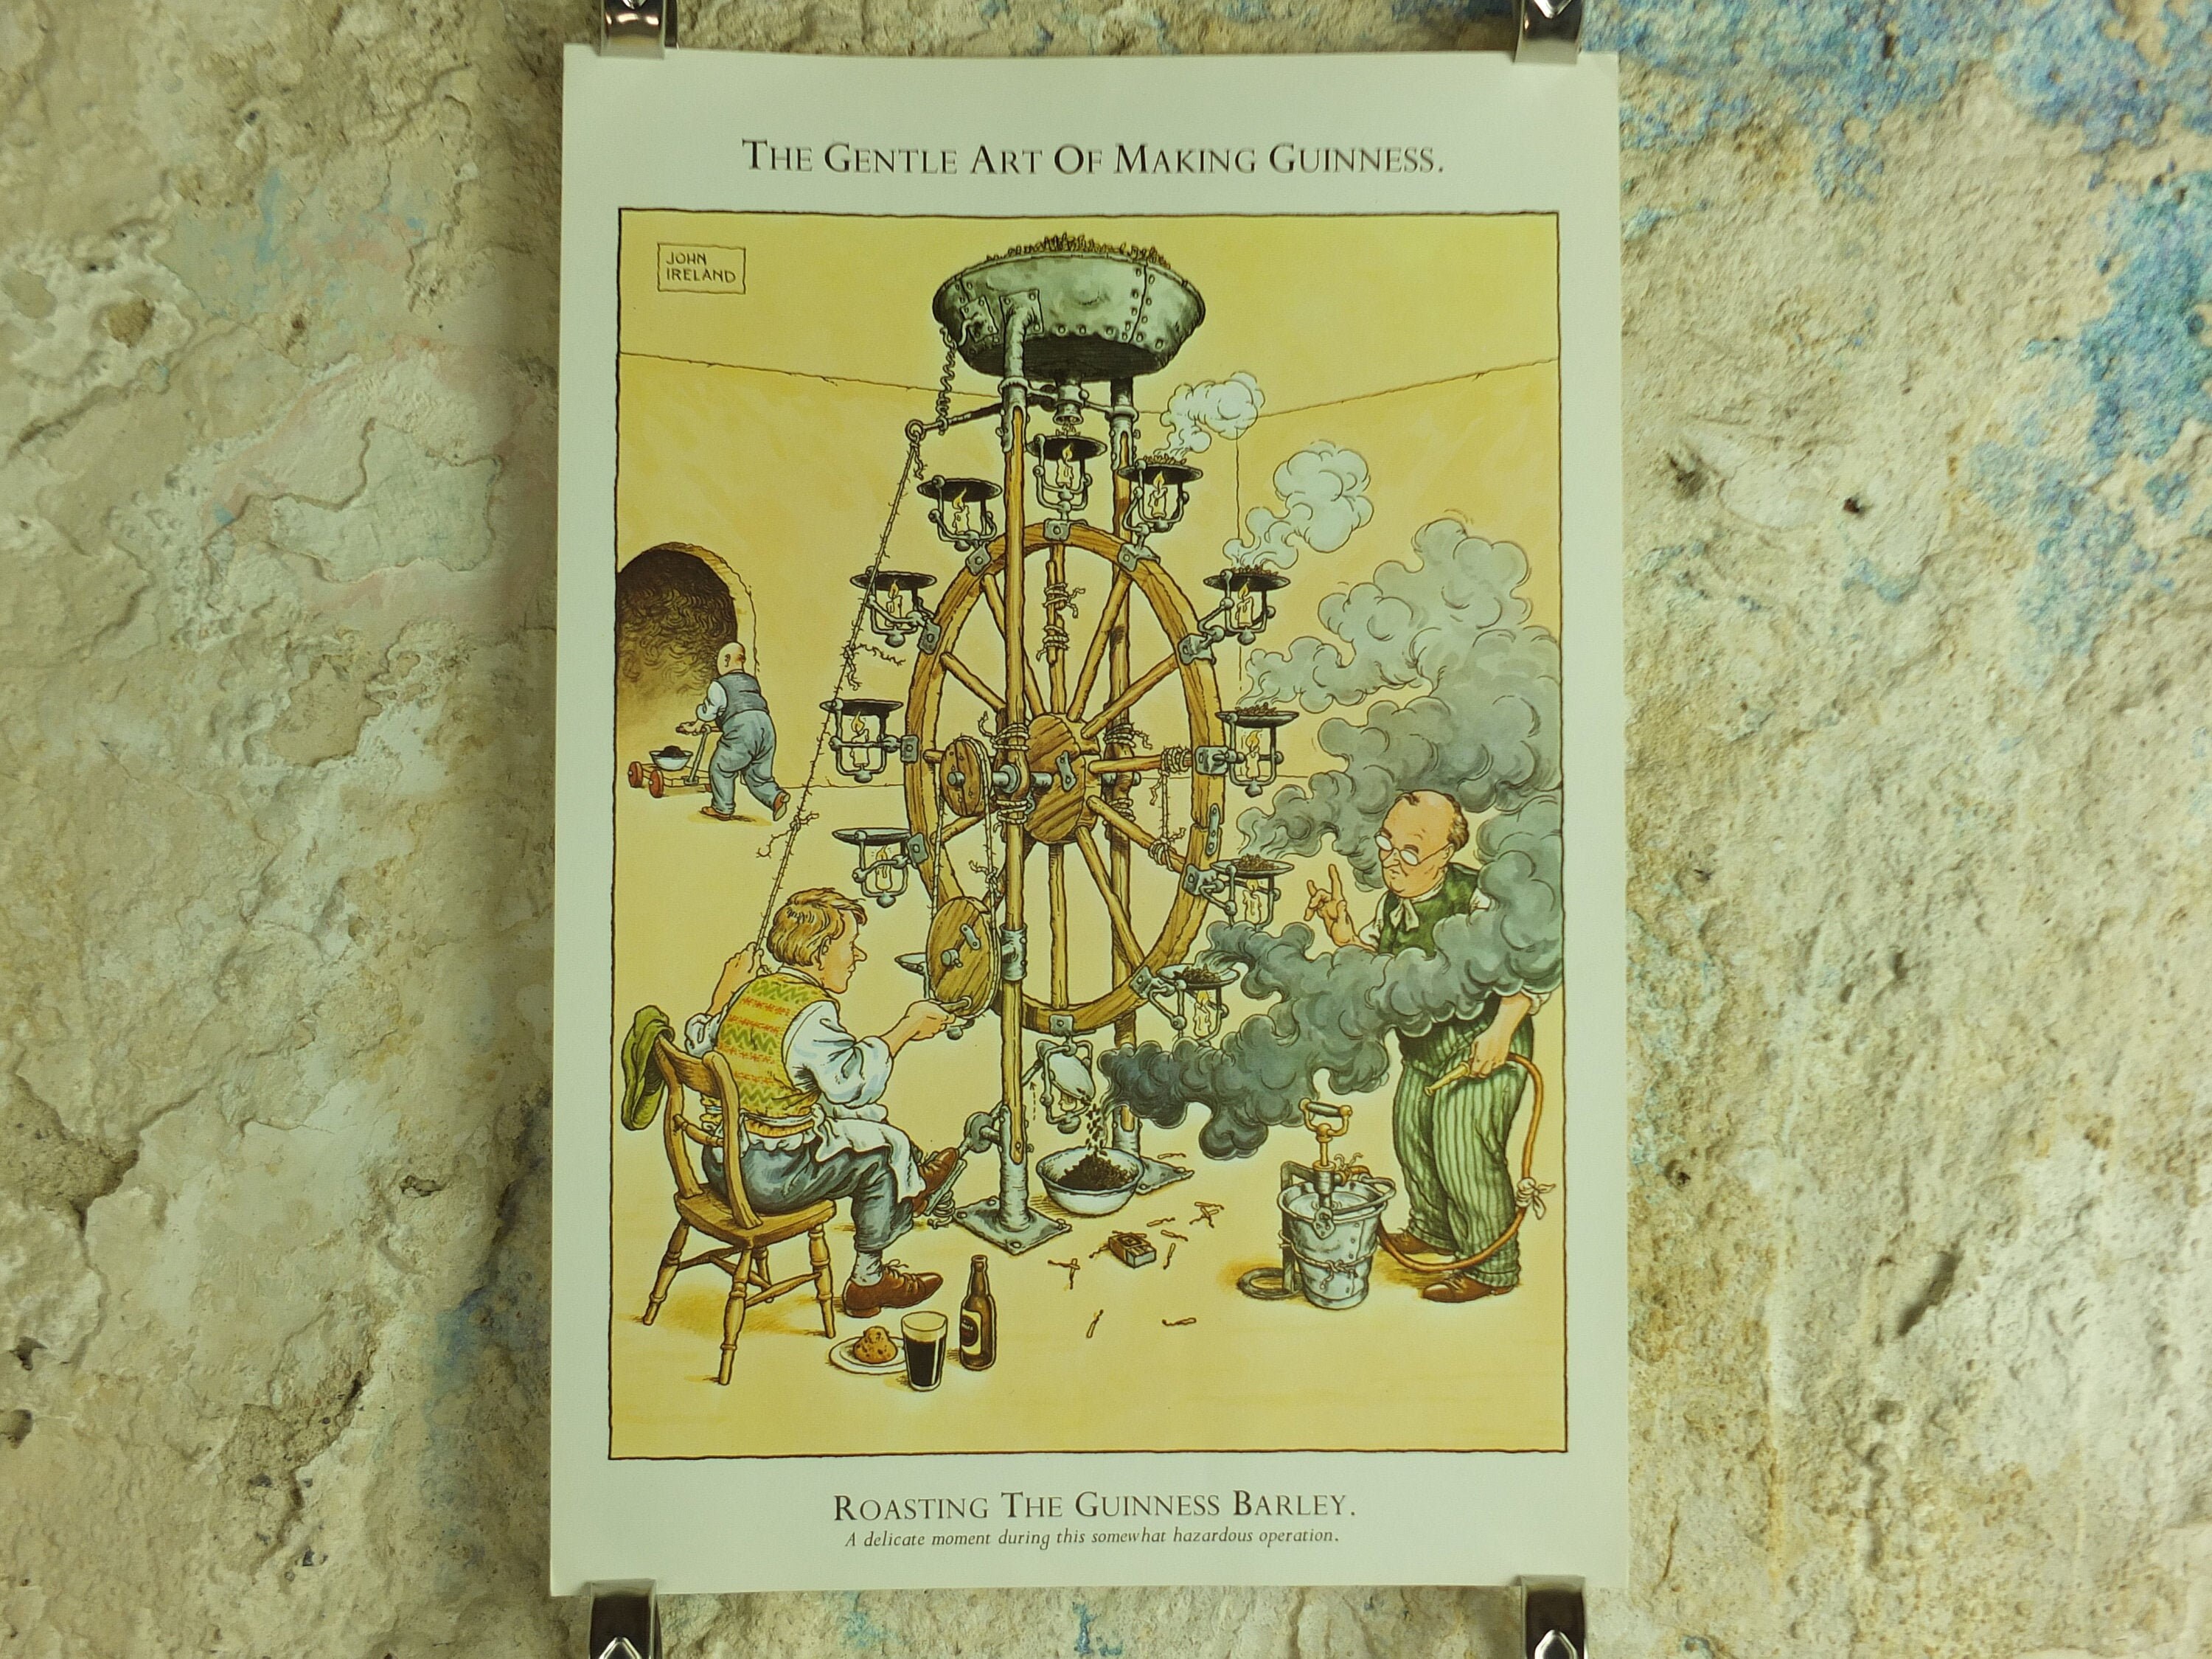 Décoration Murale à Poster De Bière Pour Irish Pub Illustration de Vecteur  - Illustration du cheers, brasserie: 207061543